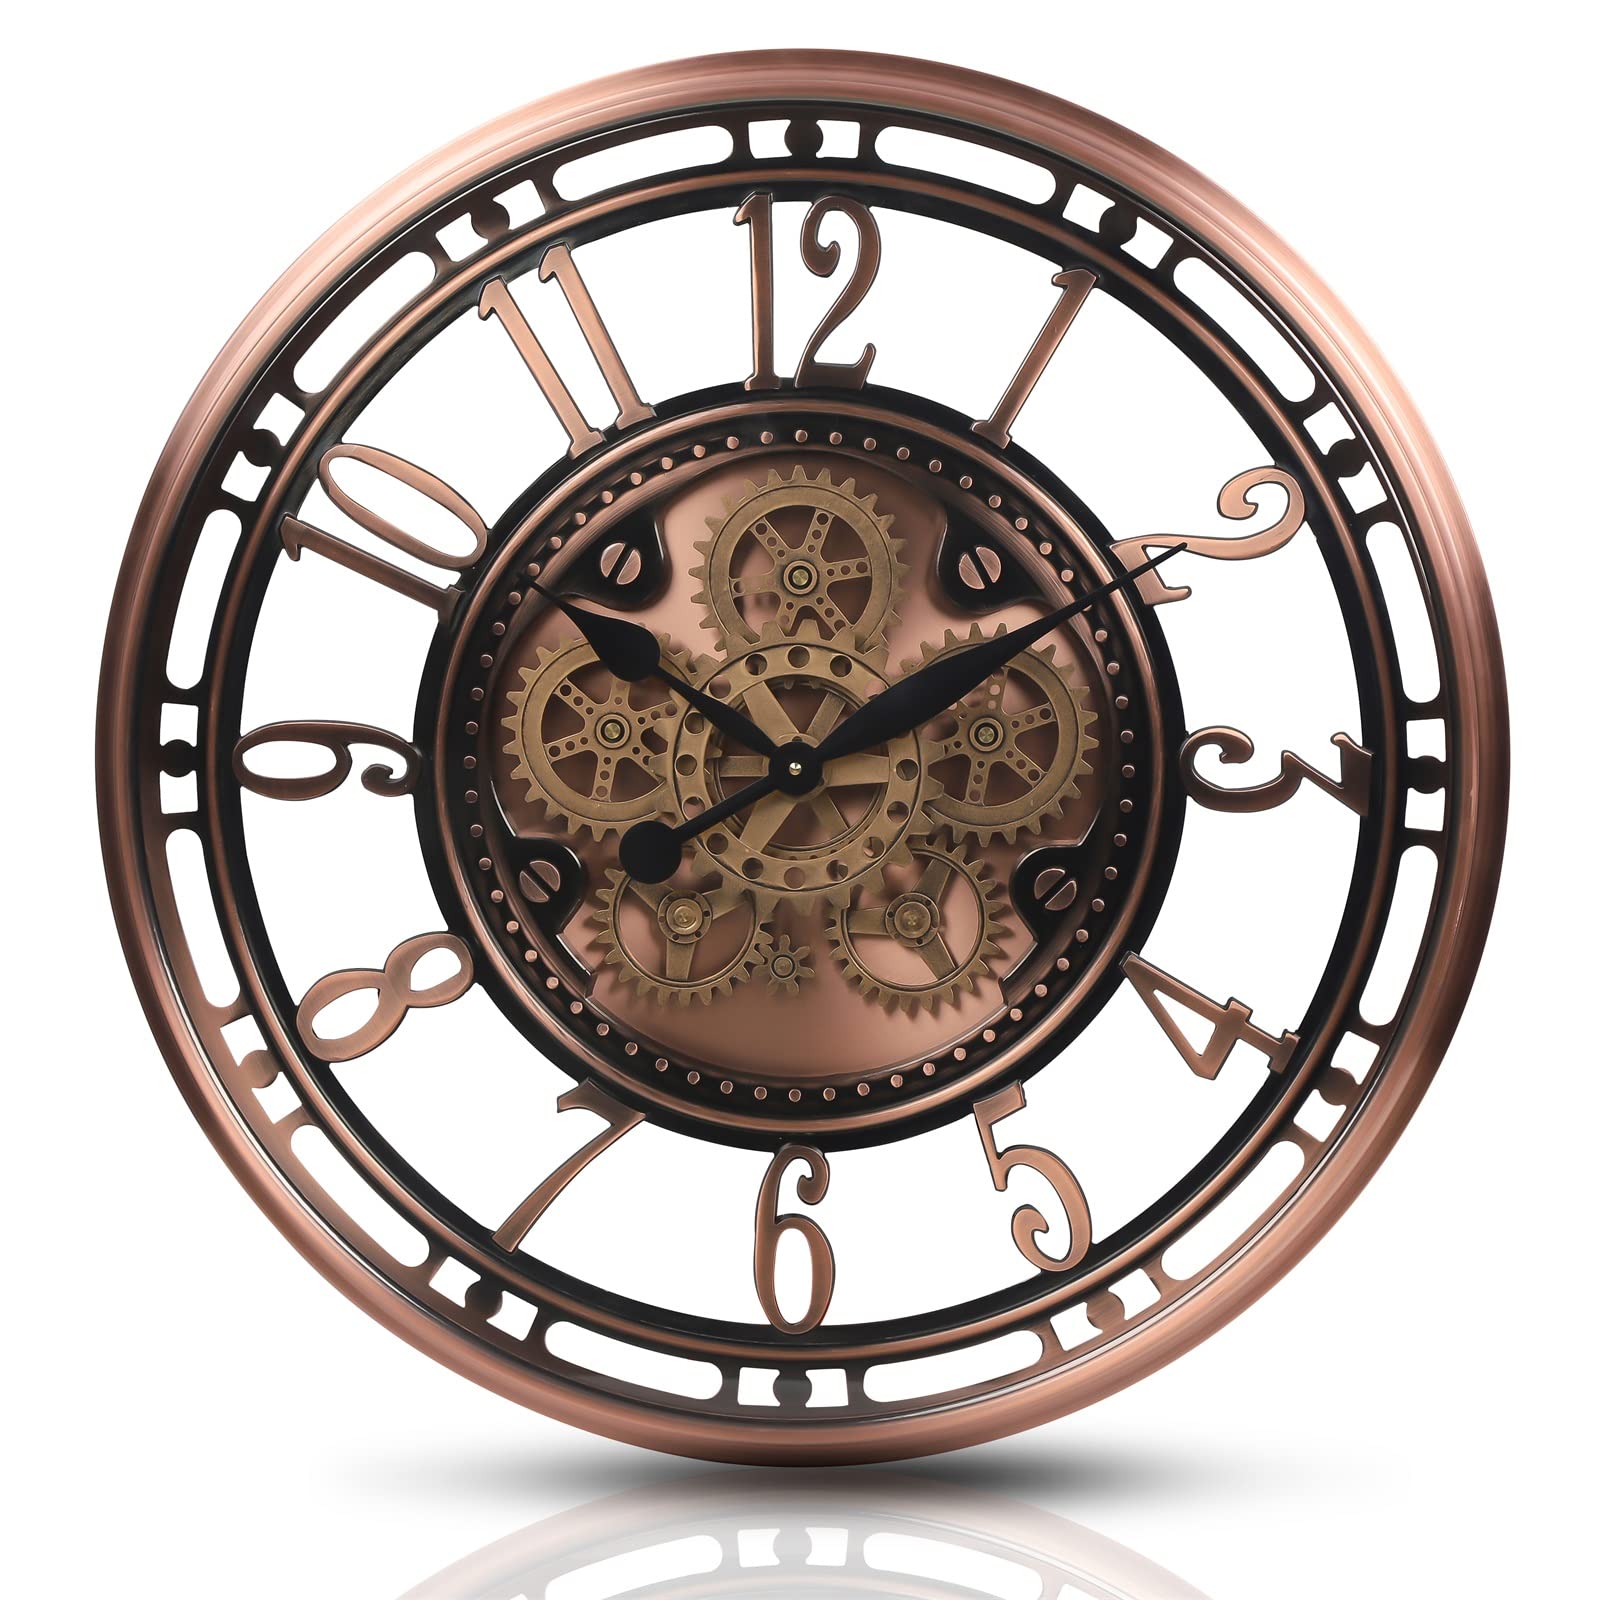 Rare Wooden Gear Clock By Clockwork Inc